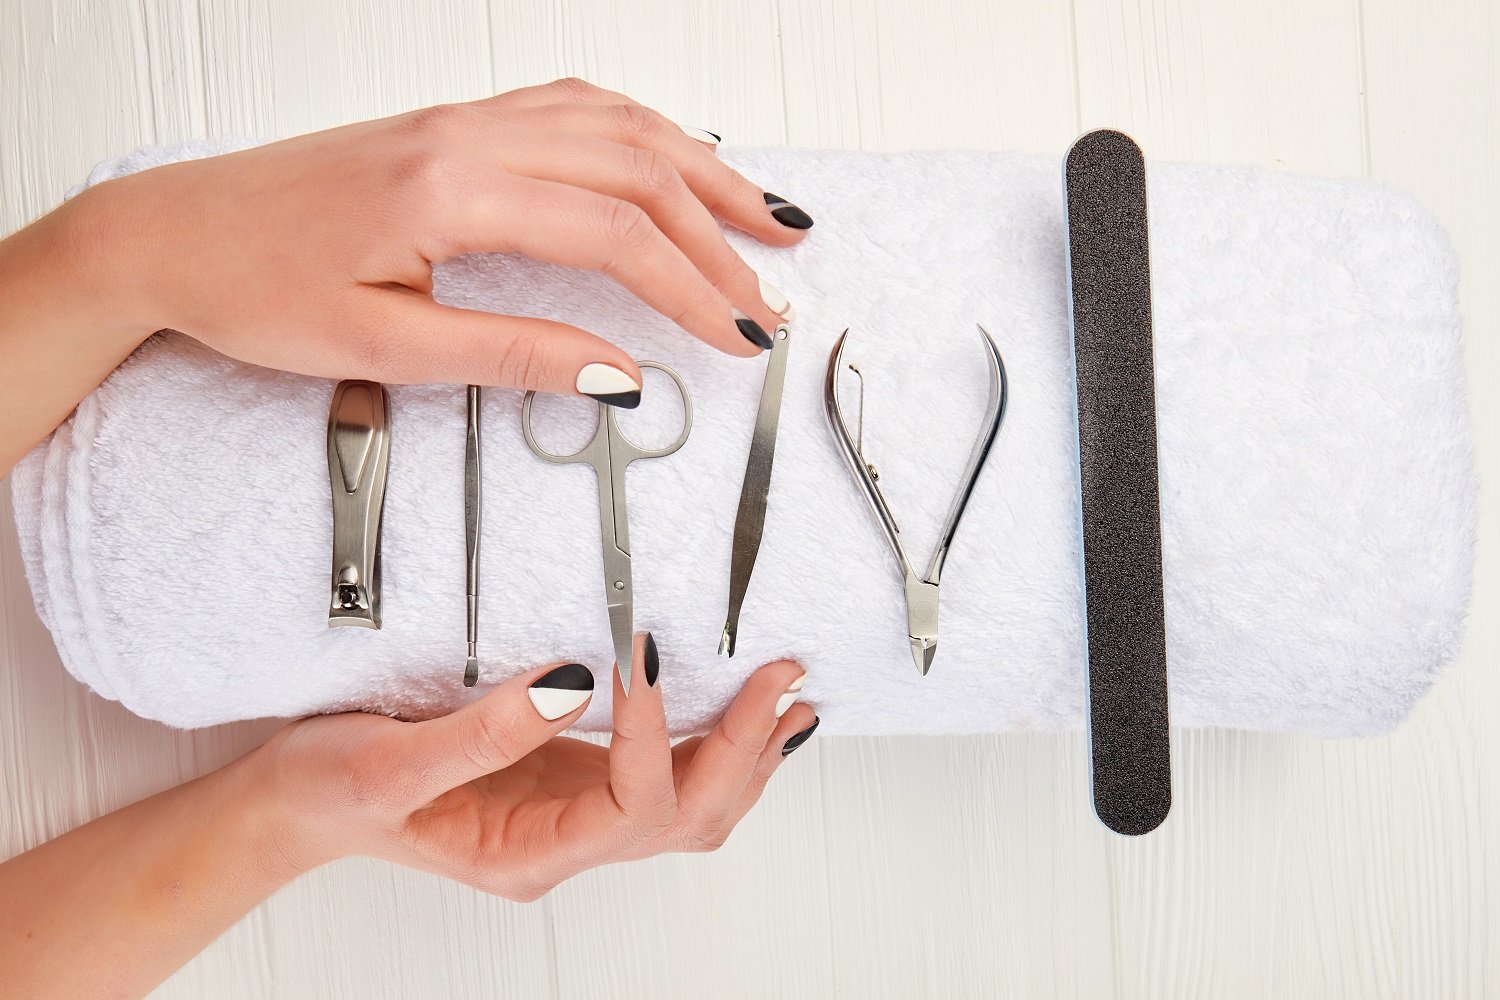 Set de herramientas para manicura sobre una toalla blanca. | Foto: Shutterstock